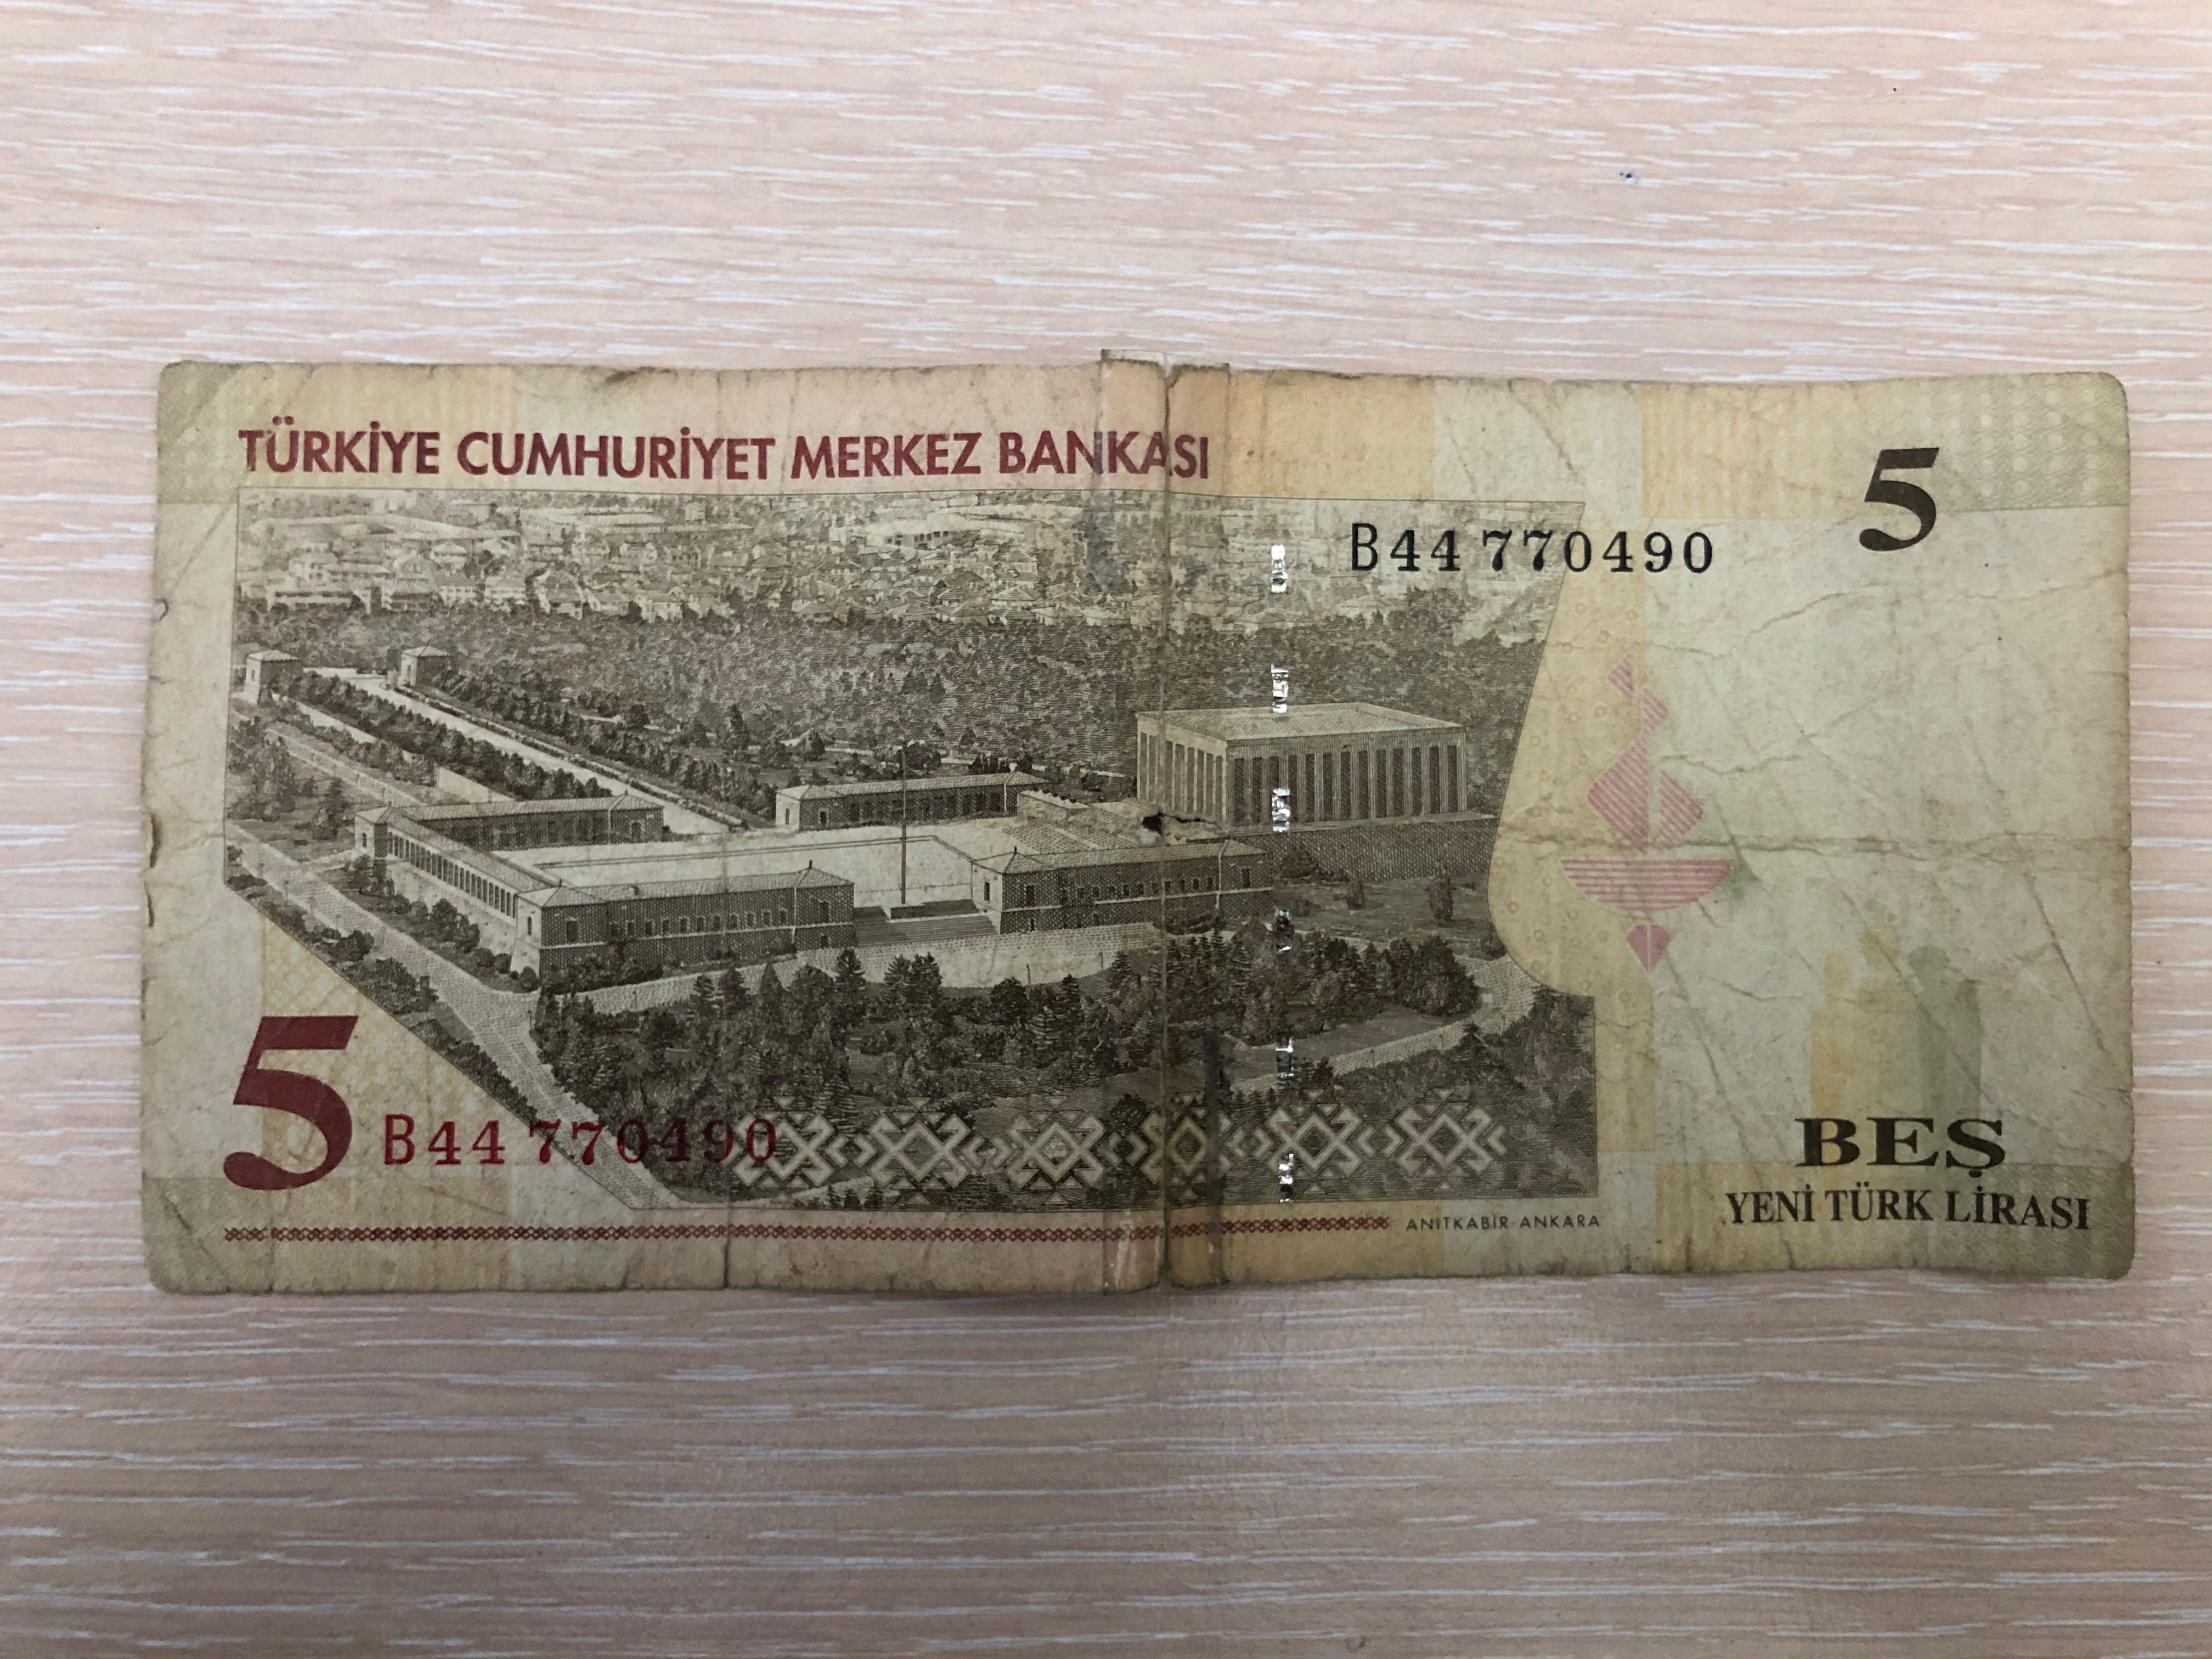 Банкнота "5 Нови Турски Лири" 2005